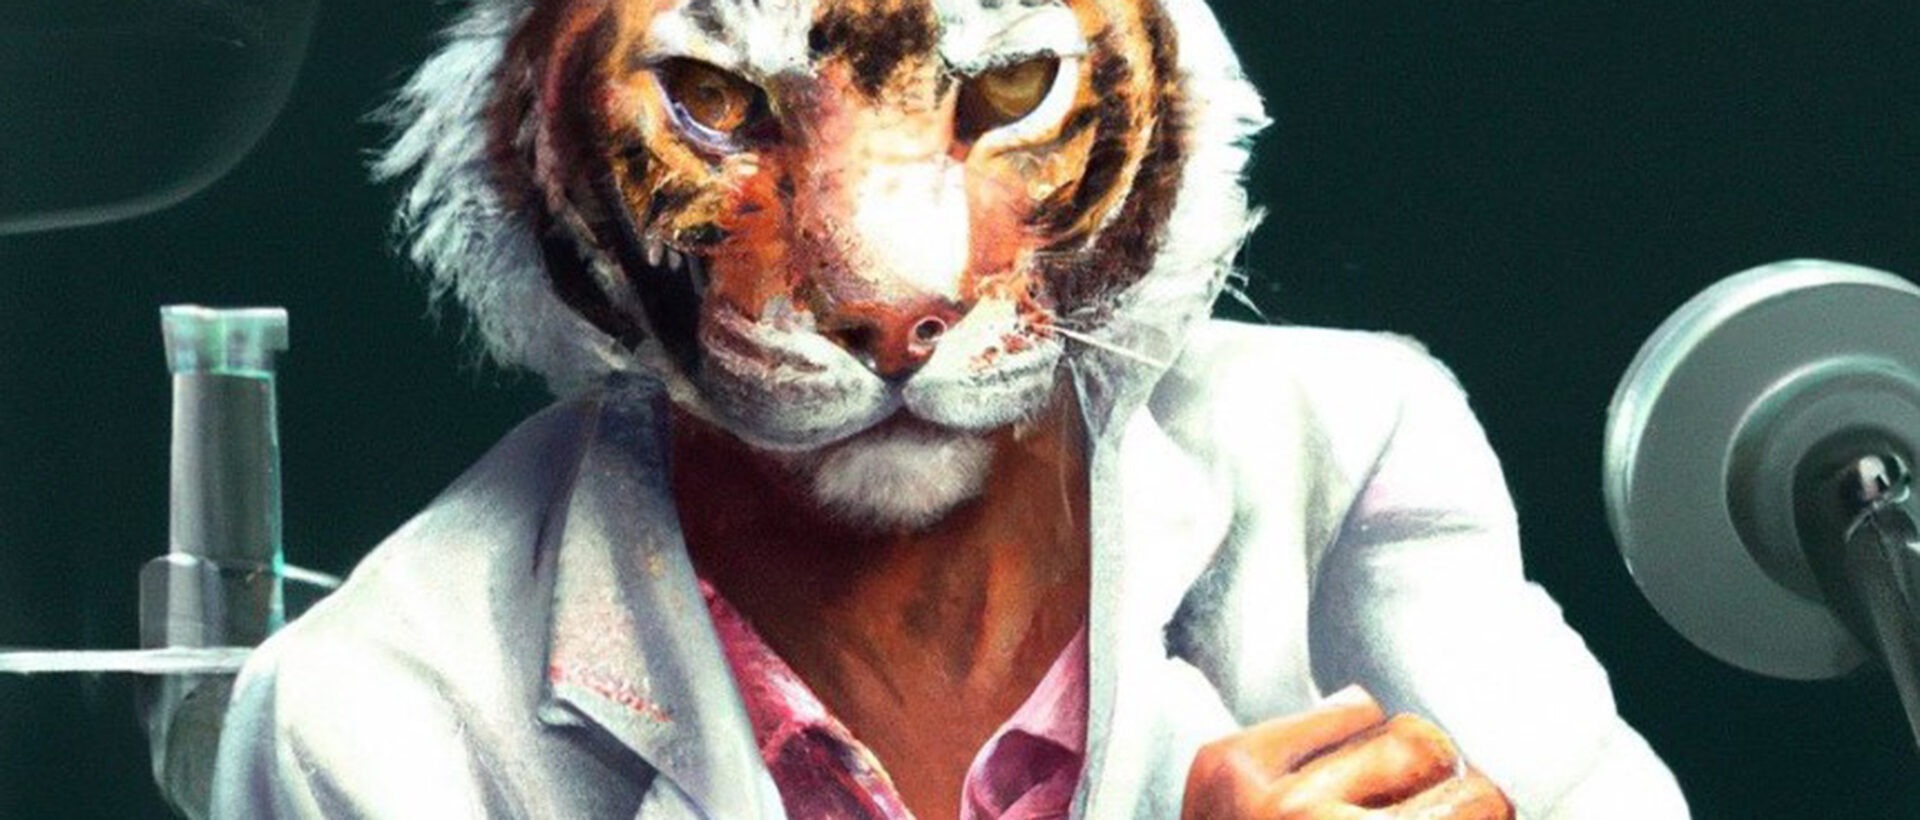 Tiger im Miami Vice Look